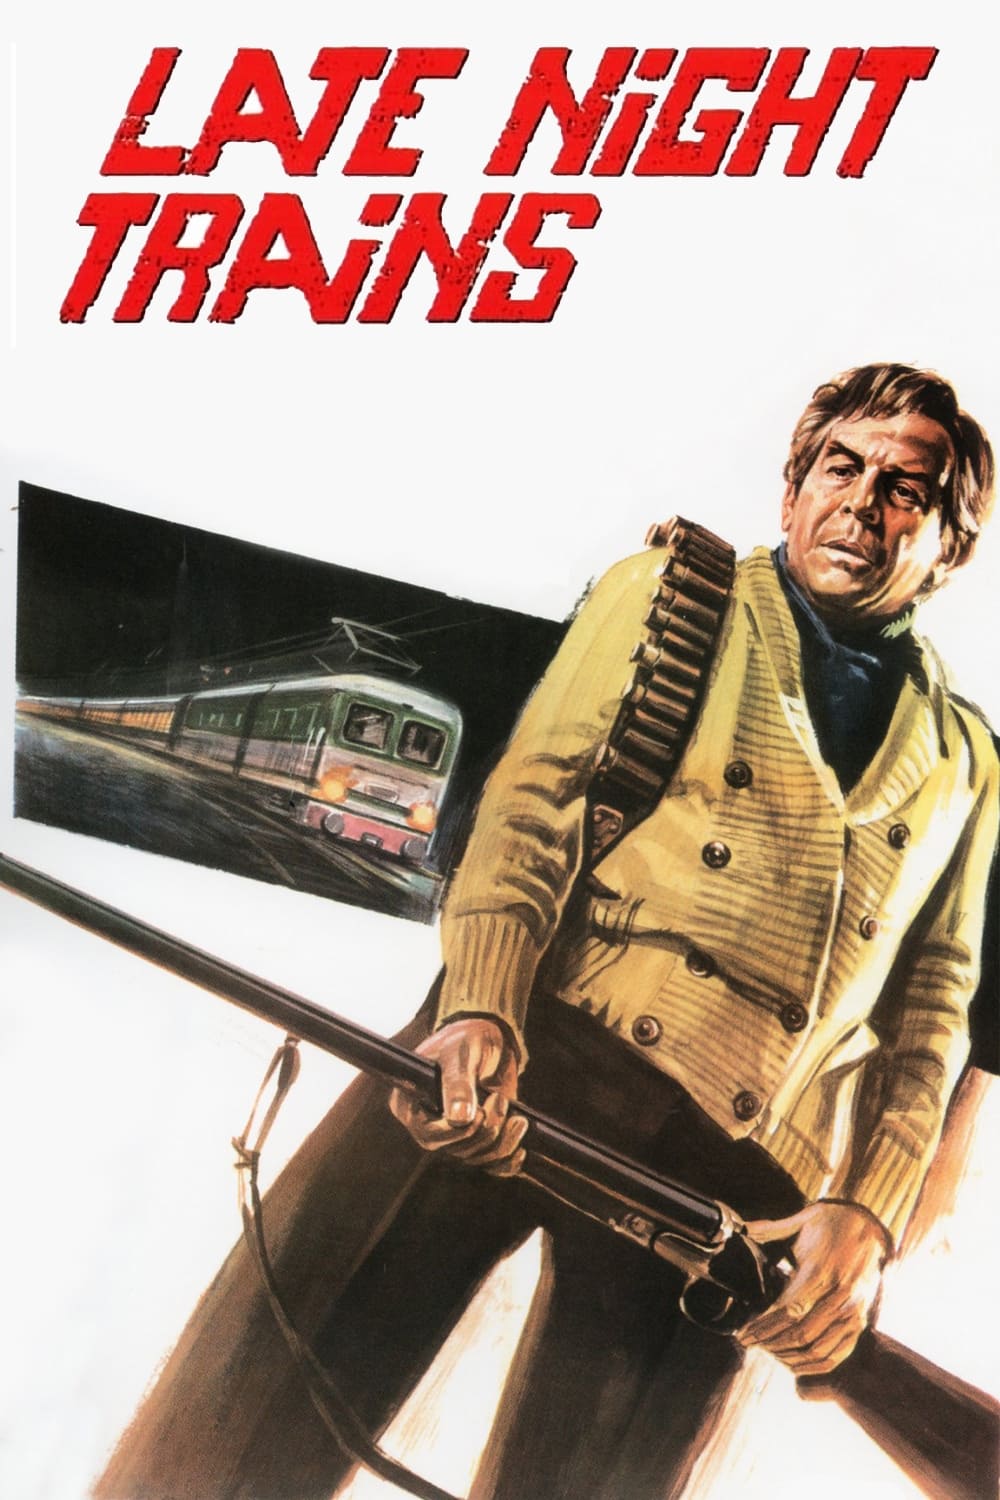 Night Train – Der letzte Zug in die Nacht (1975)